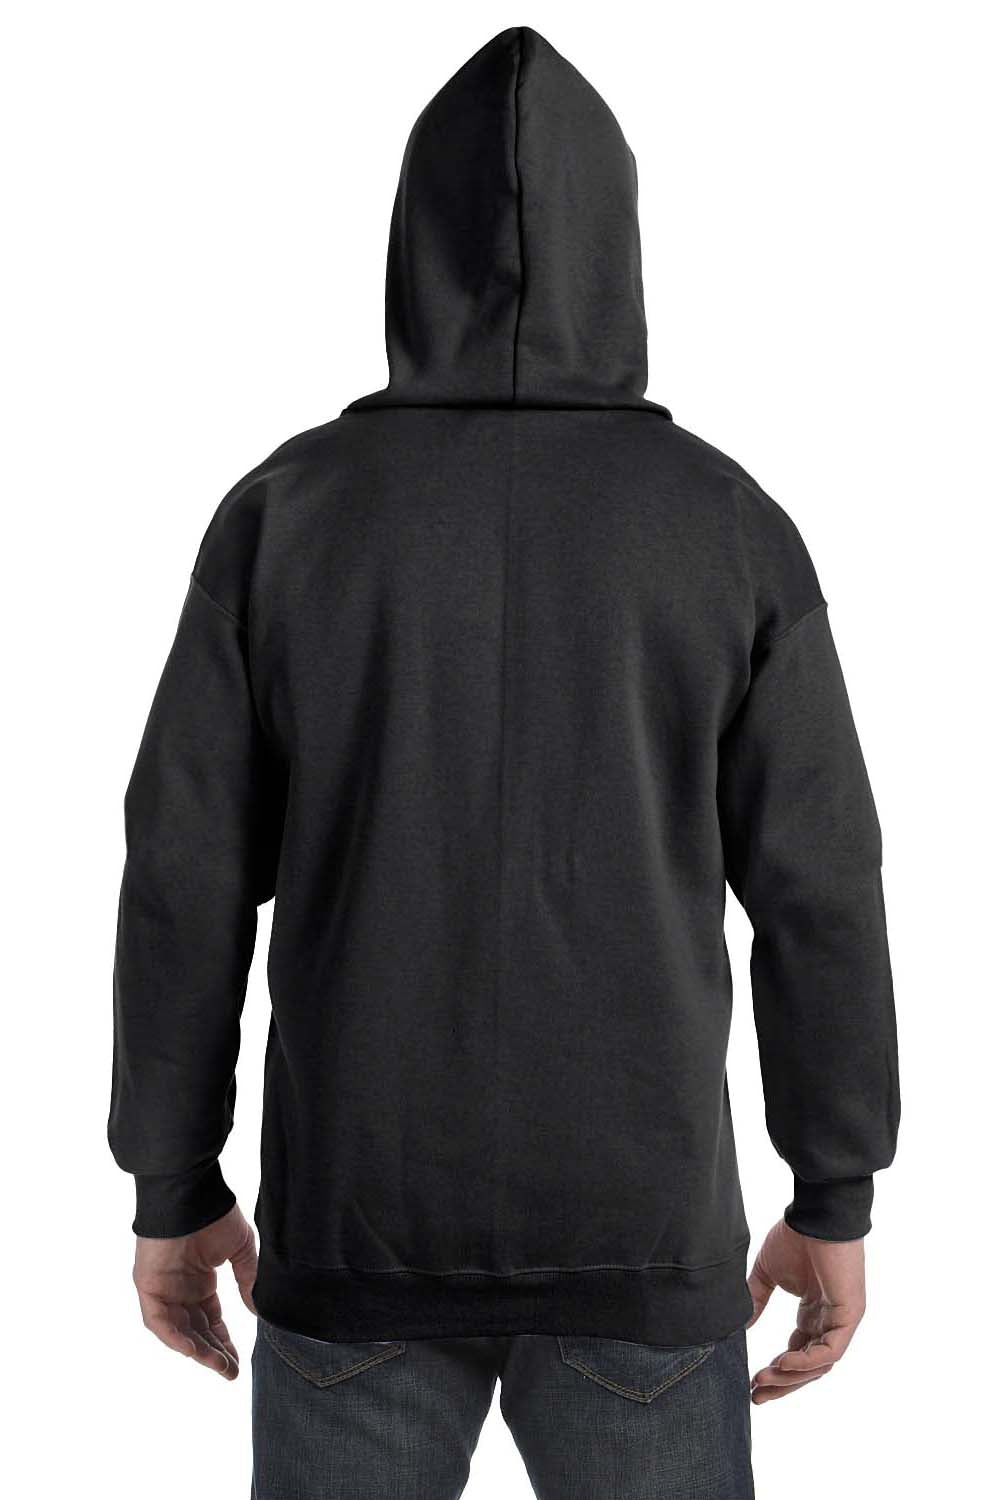 Hanes F280 Mens Ultimate Cotton PrintPro XP Full Zip Hooded Sweatshirt Hoodie Black Back